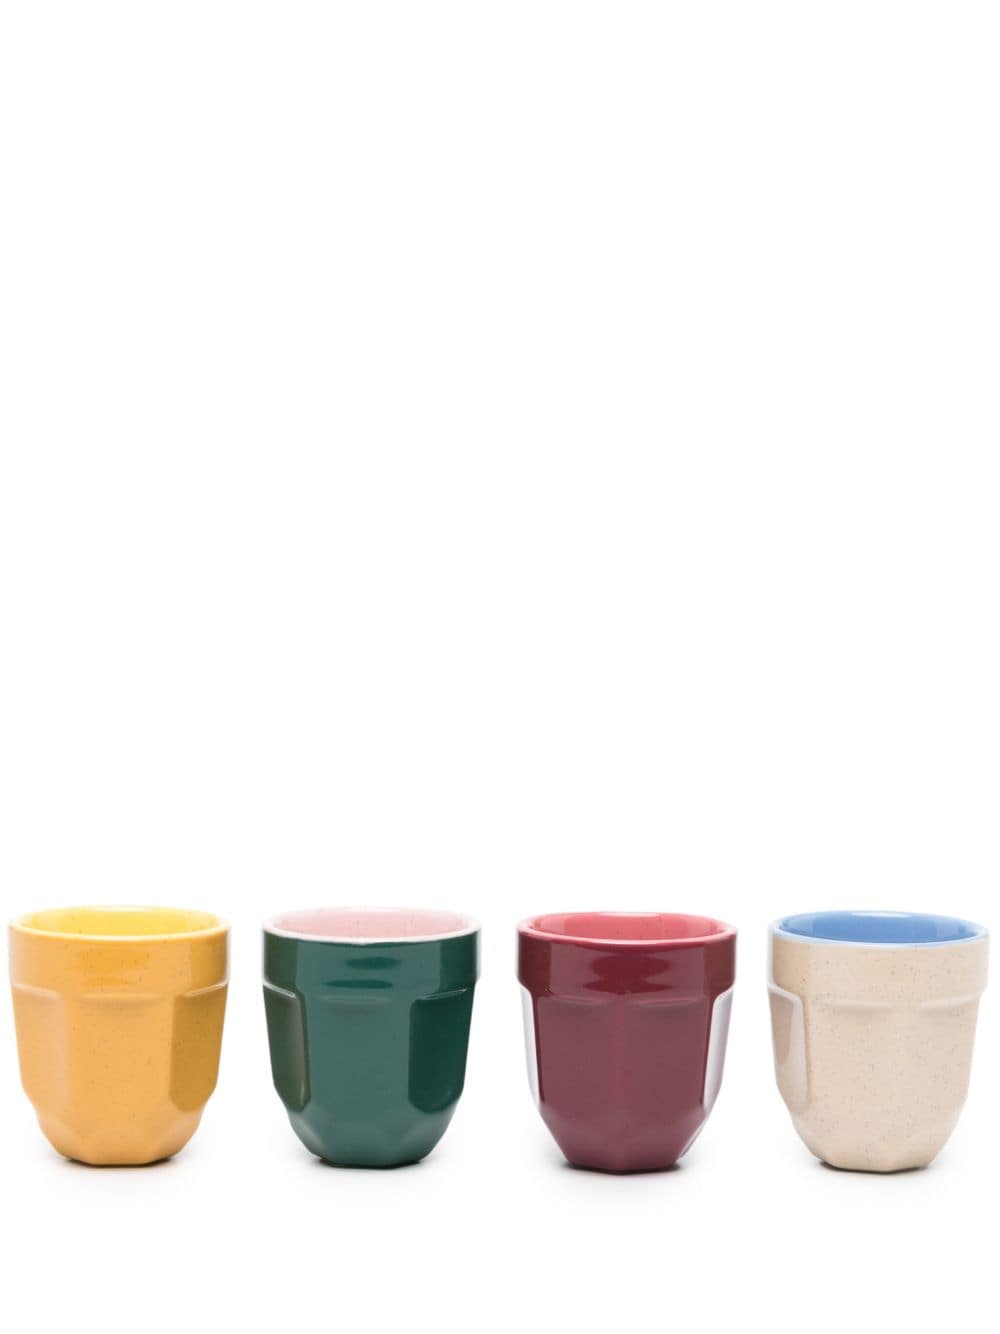 Polspotten X La Marzocco Multicolour Espresso Cup Set